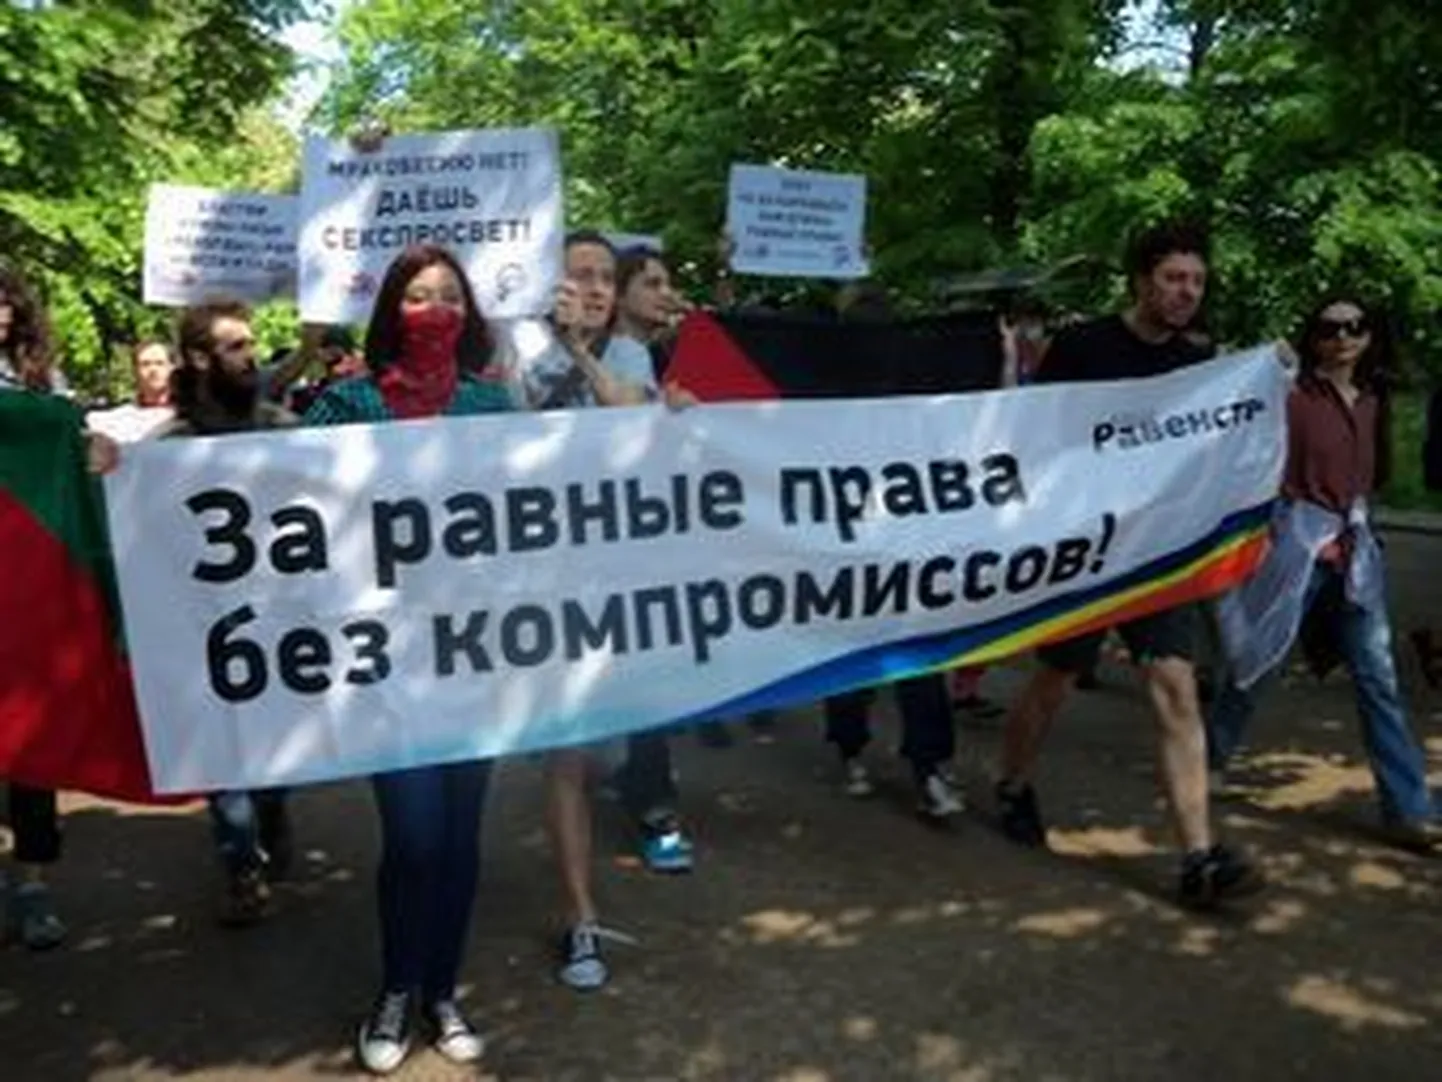 "Марш равенства" на Гоголевском бульваре в Москве.